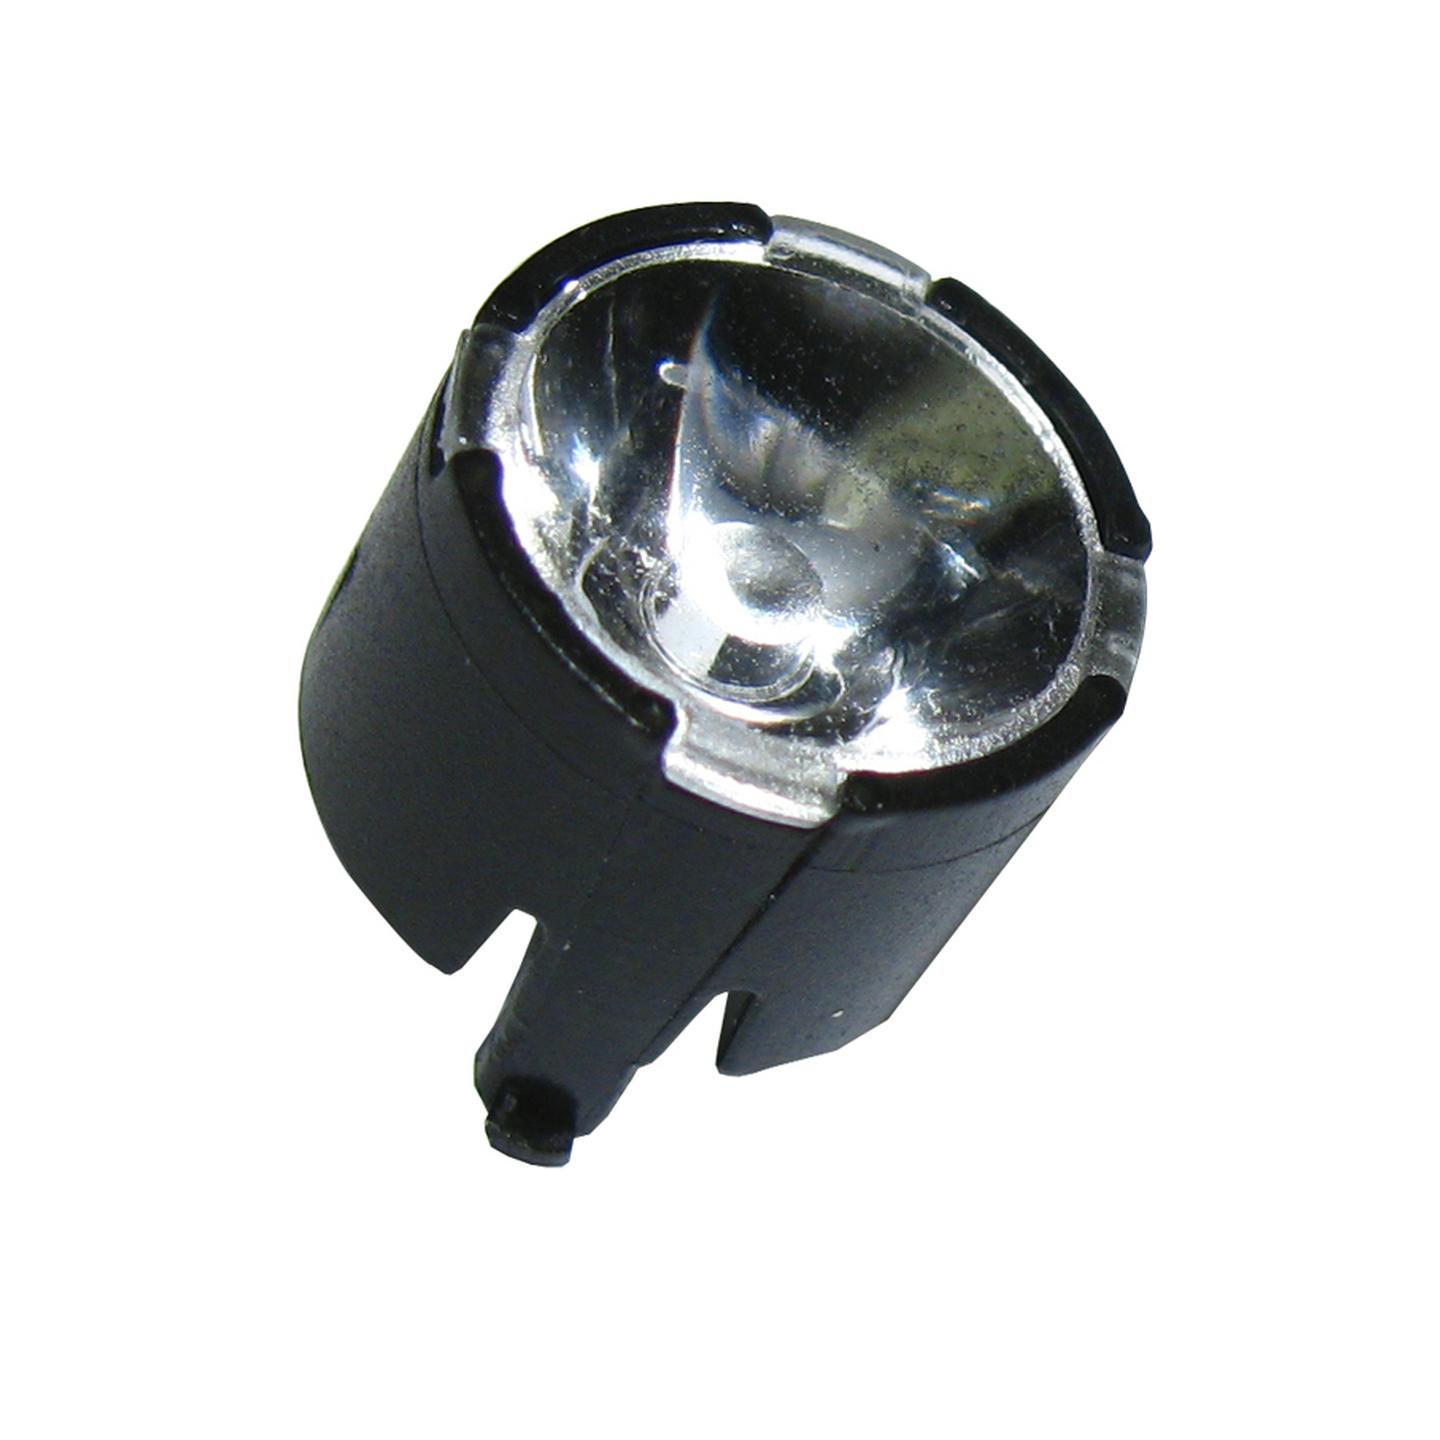 Narrow Angle Collimator Lens for Cree XP-G High Power LED